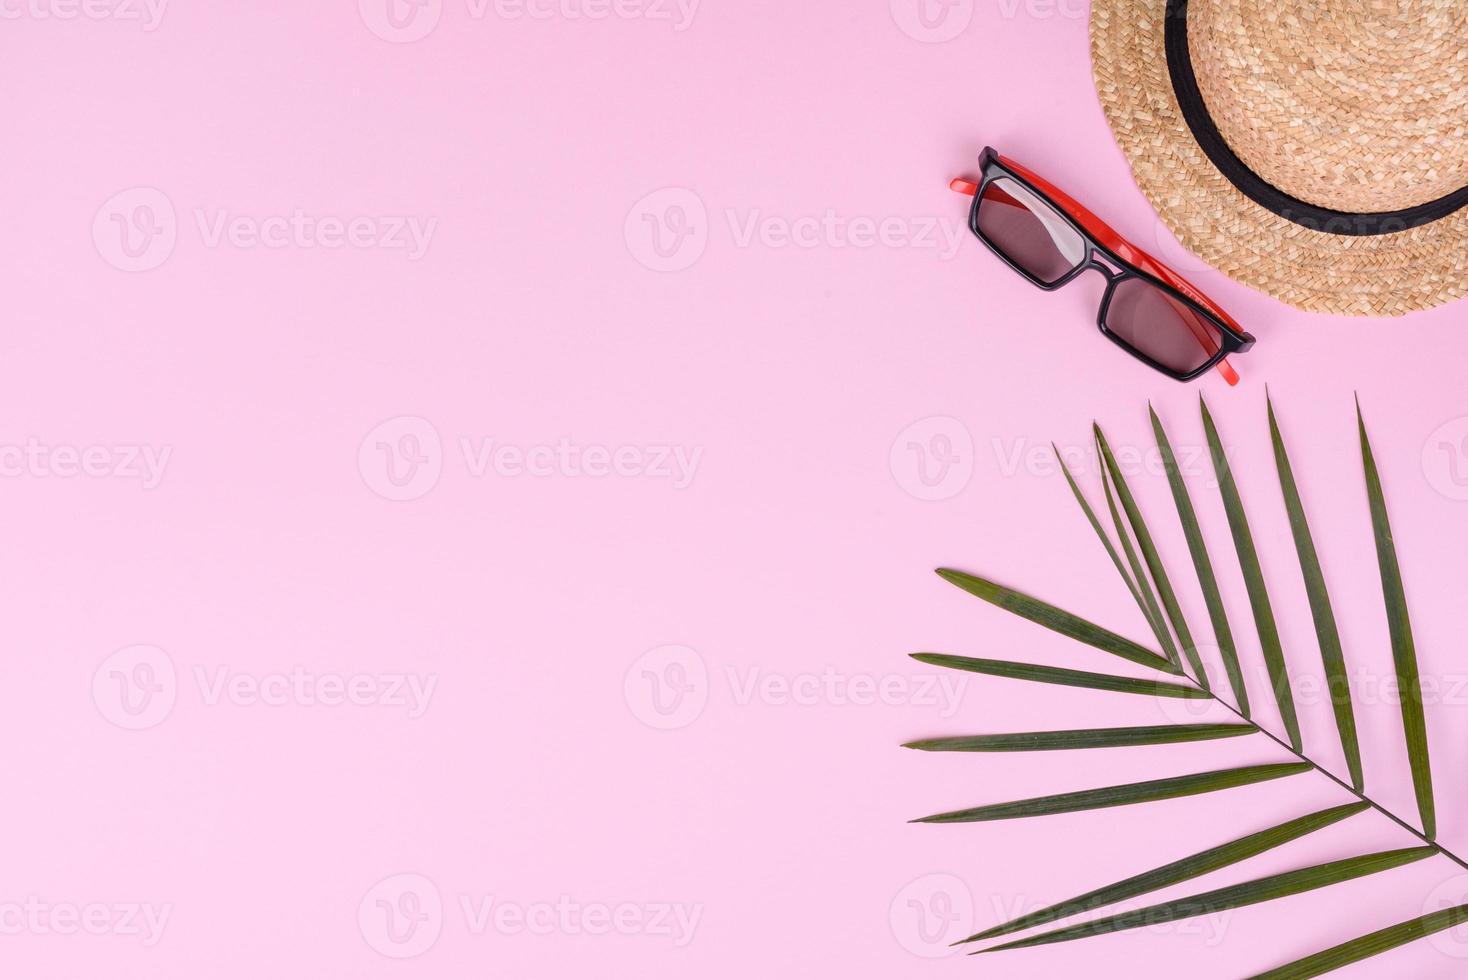 carambola di frutta, accessori da spiaggia e fogliame di una pianta tropicale su carta colorata foto